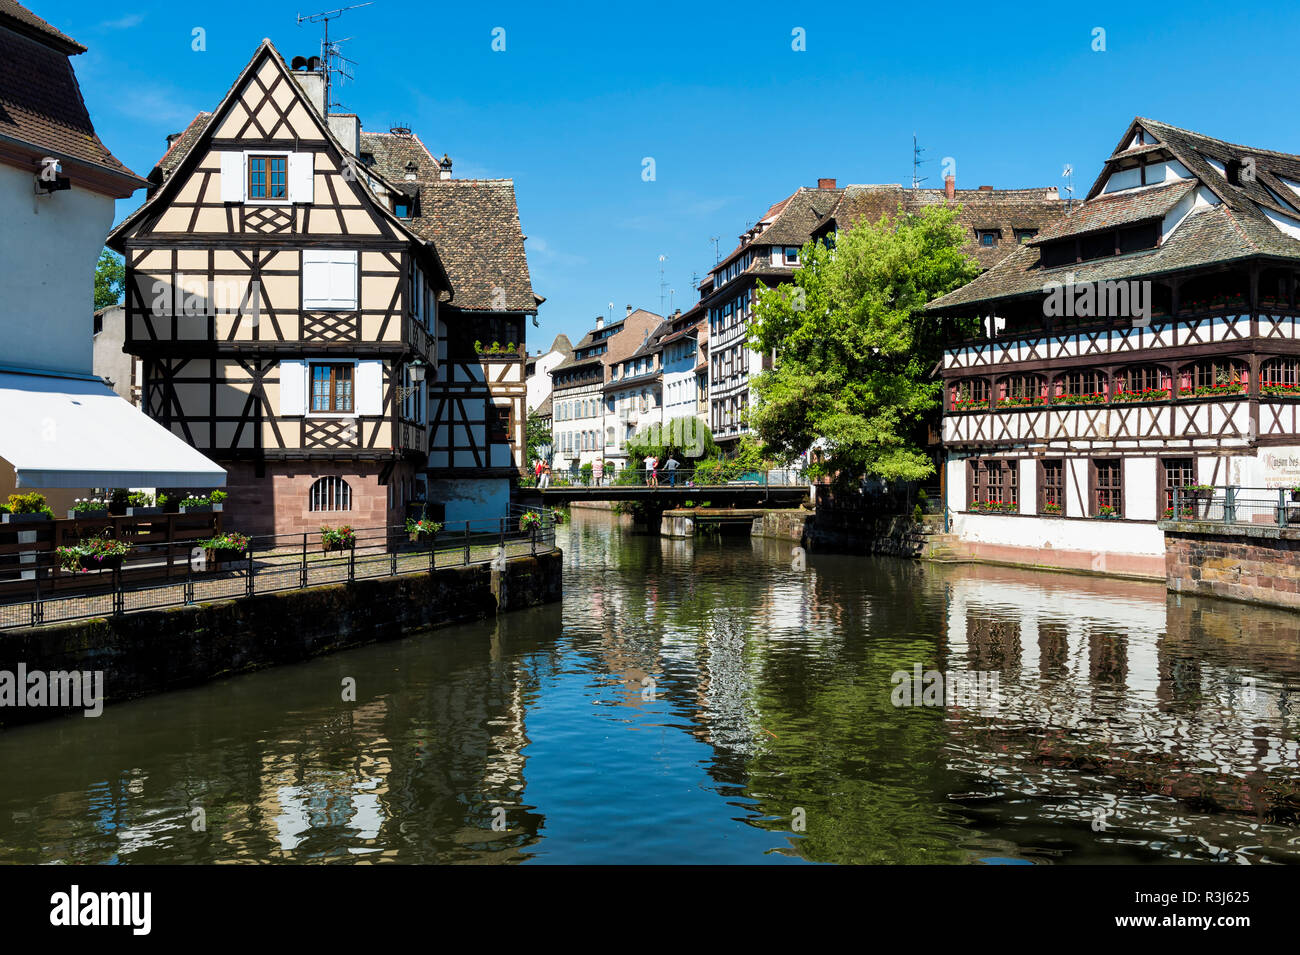 Maison des Tanneurs et maisons à colombages le long de l'ILL, le canal de la Petite France, Strasbourg, Alsace, Bas-Rhin Banque D'Images